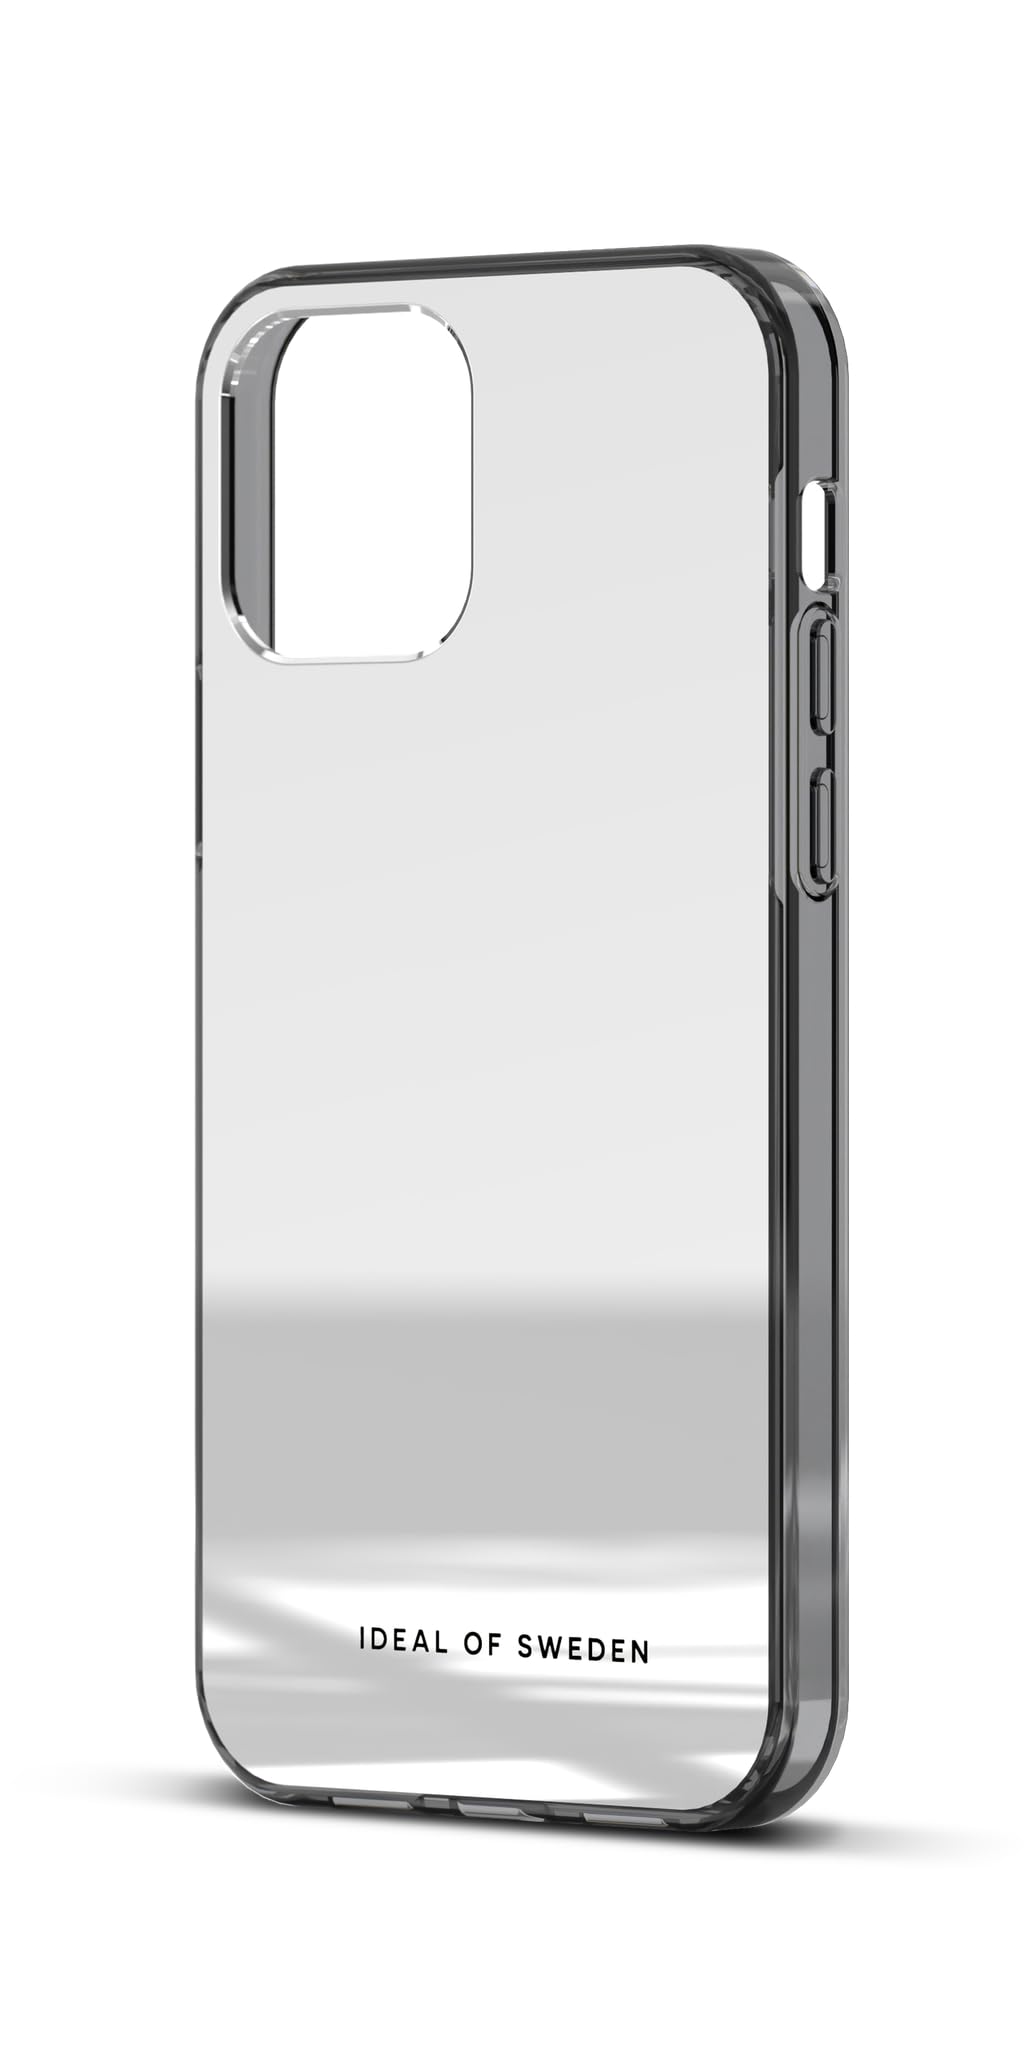 IDEAL OF SWEDEN Durchsichtige Handyhülle mit erhöhten Kanten und Nicht vergilbenden Materialien, fallgetesteter Schutz mit Spiegel Finish, kompatibel mit iPhone 12 und iPhone 12 Pro (Mirror)